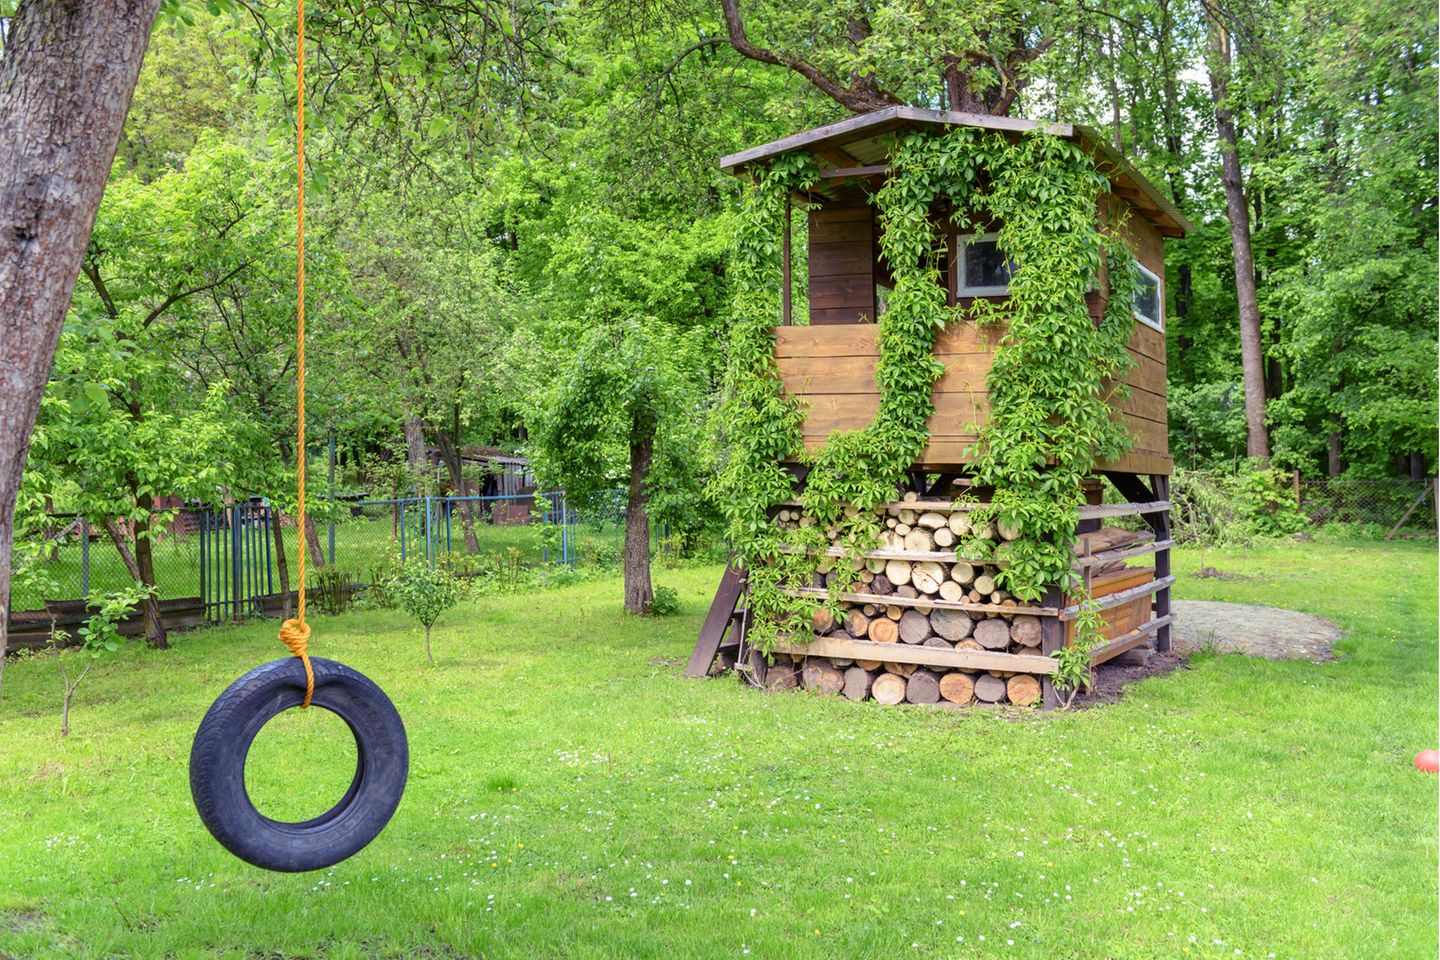 Spielhaus aus Holz, mit Kletterpflanzen bewachsen in einem baumbestandenen Garten